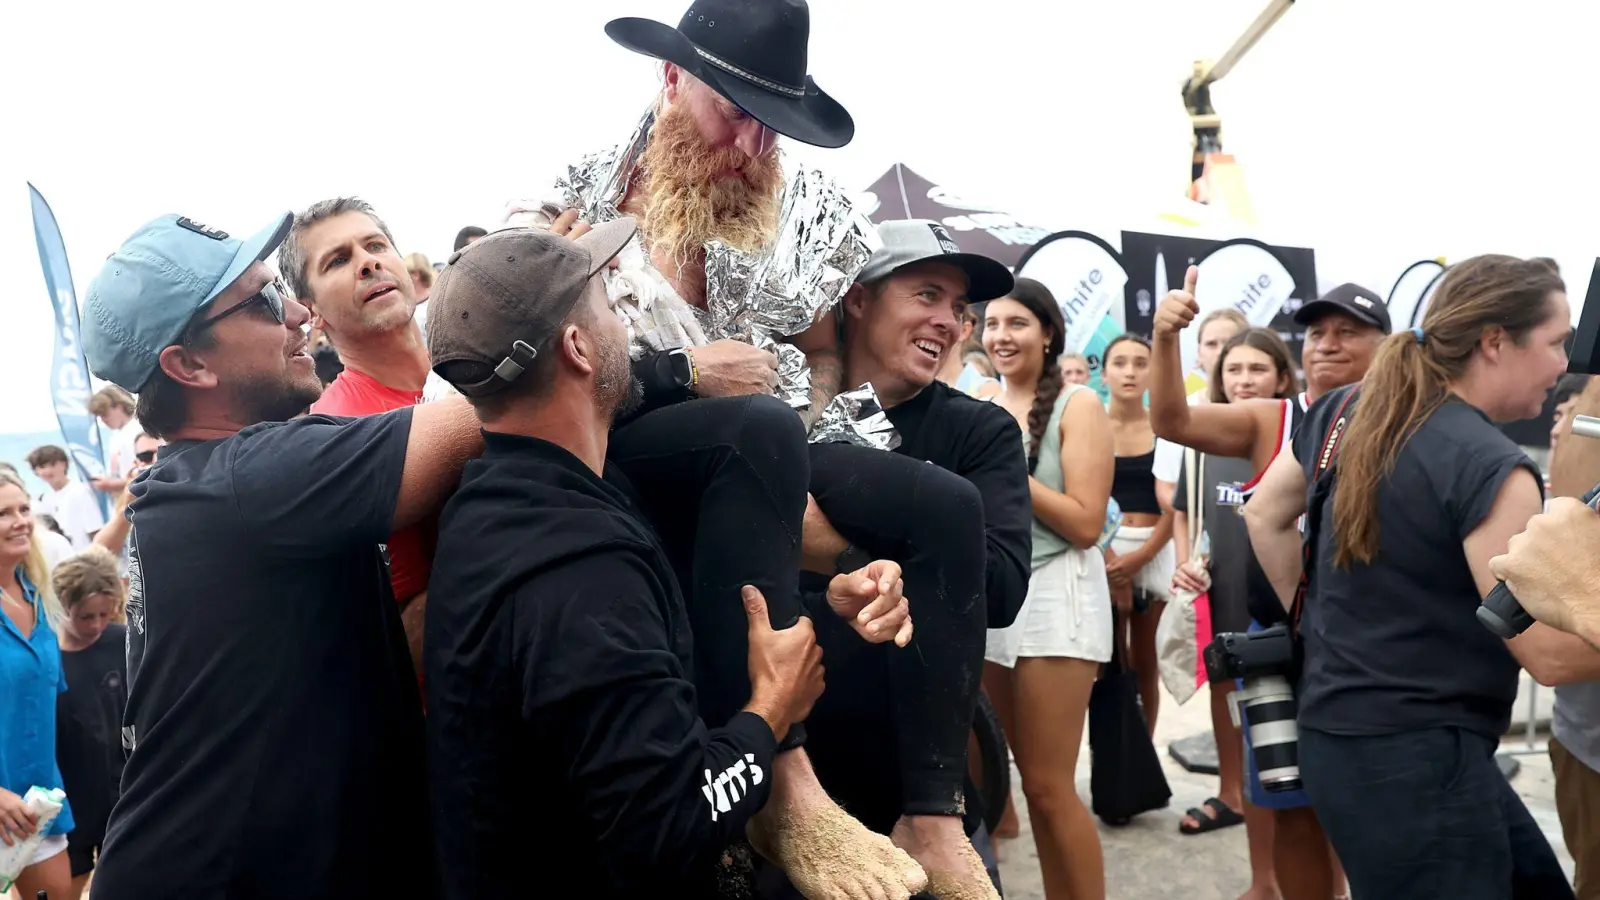 Der erschöpfte Blake Johnston wird von Freunden und Betreuern getragen, nachdem er den längsten Surf-Weltrekord von 500 Wellen in 40 Stunden vor der Küste Sydneys überboten hat. (Foto: Jane Dempster/AAP/dpa)